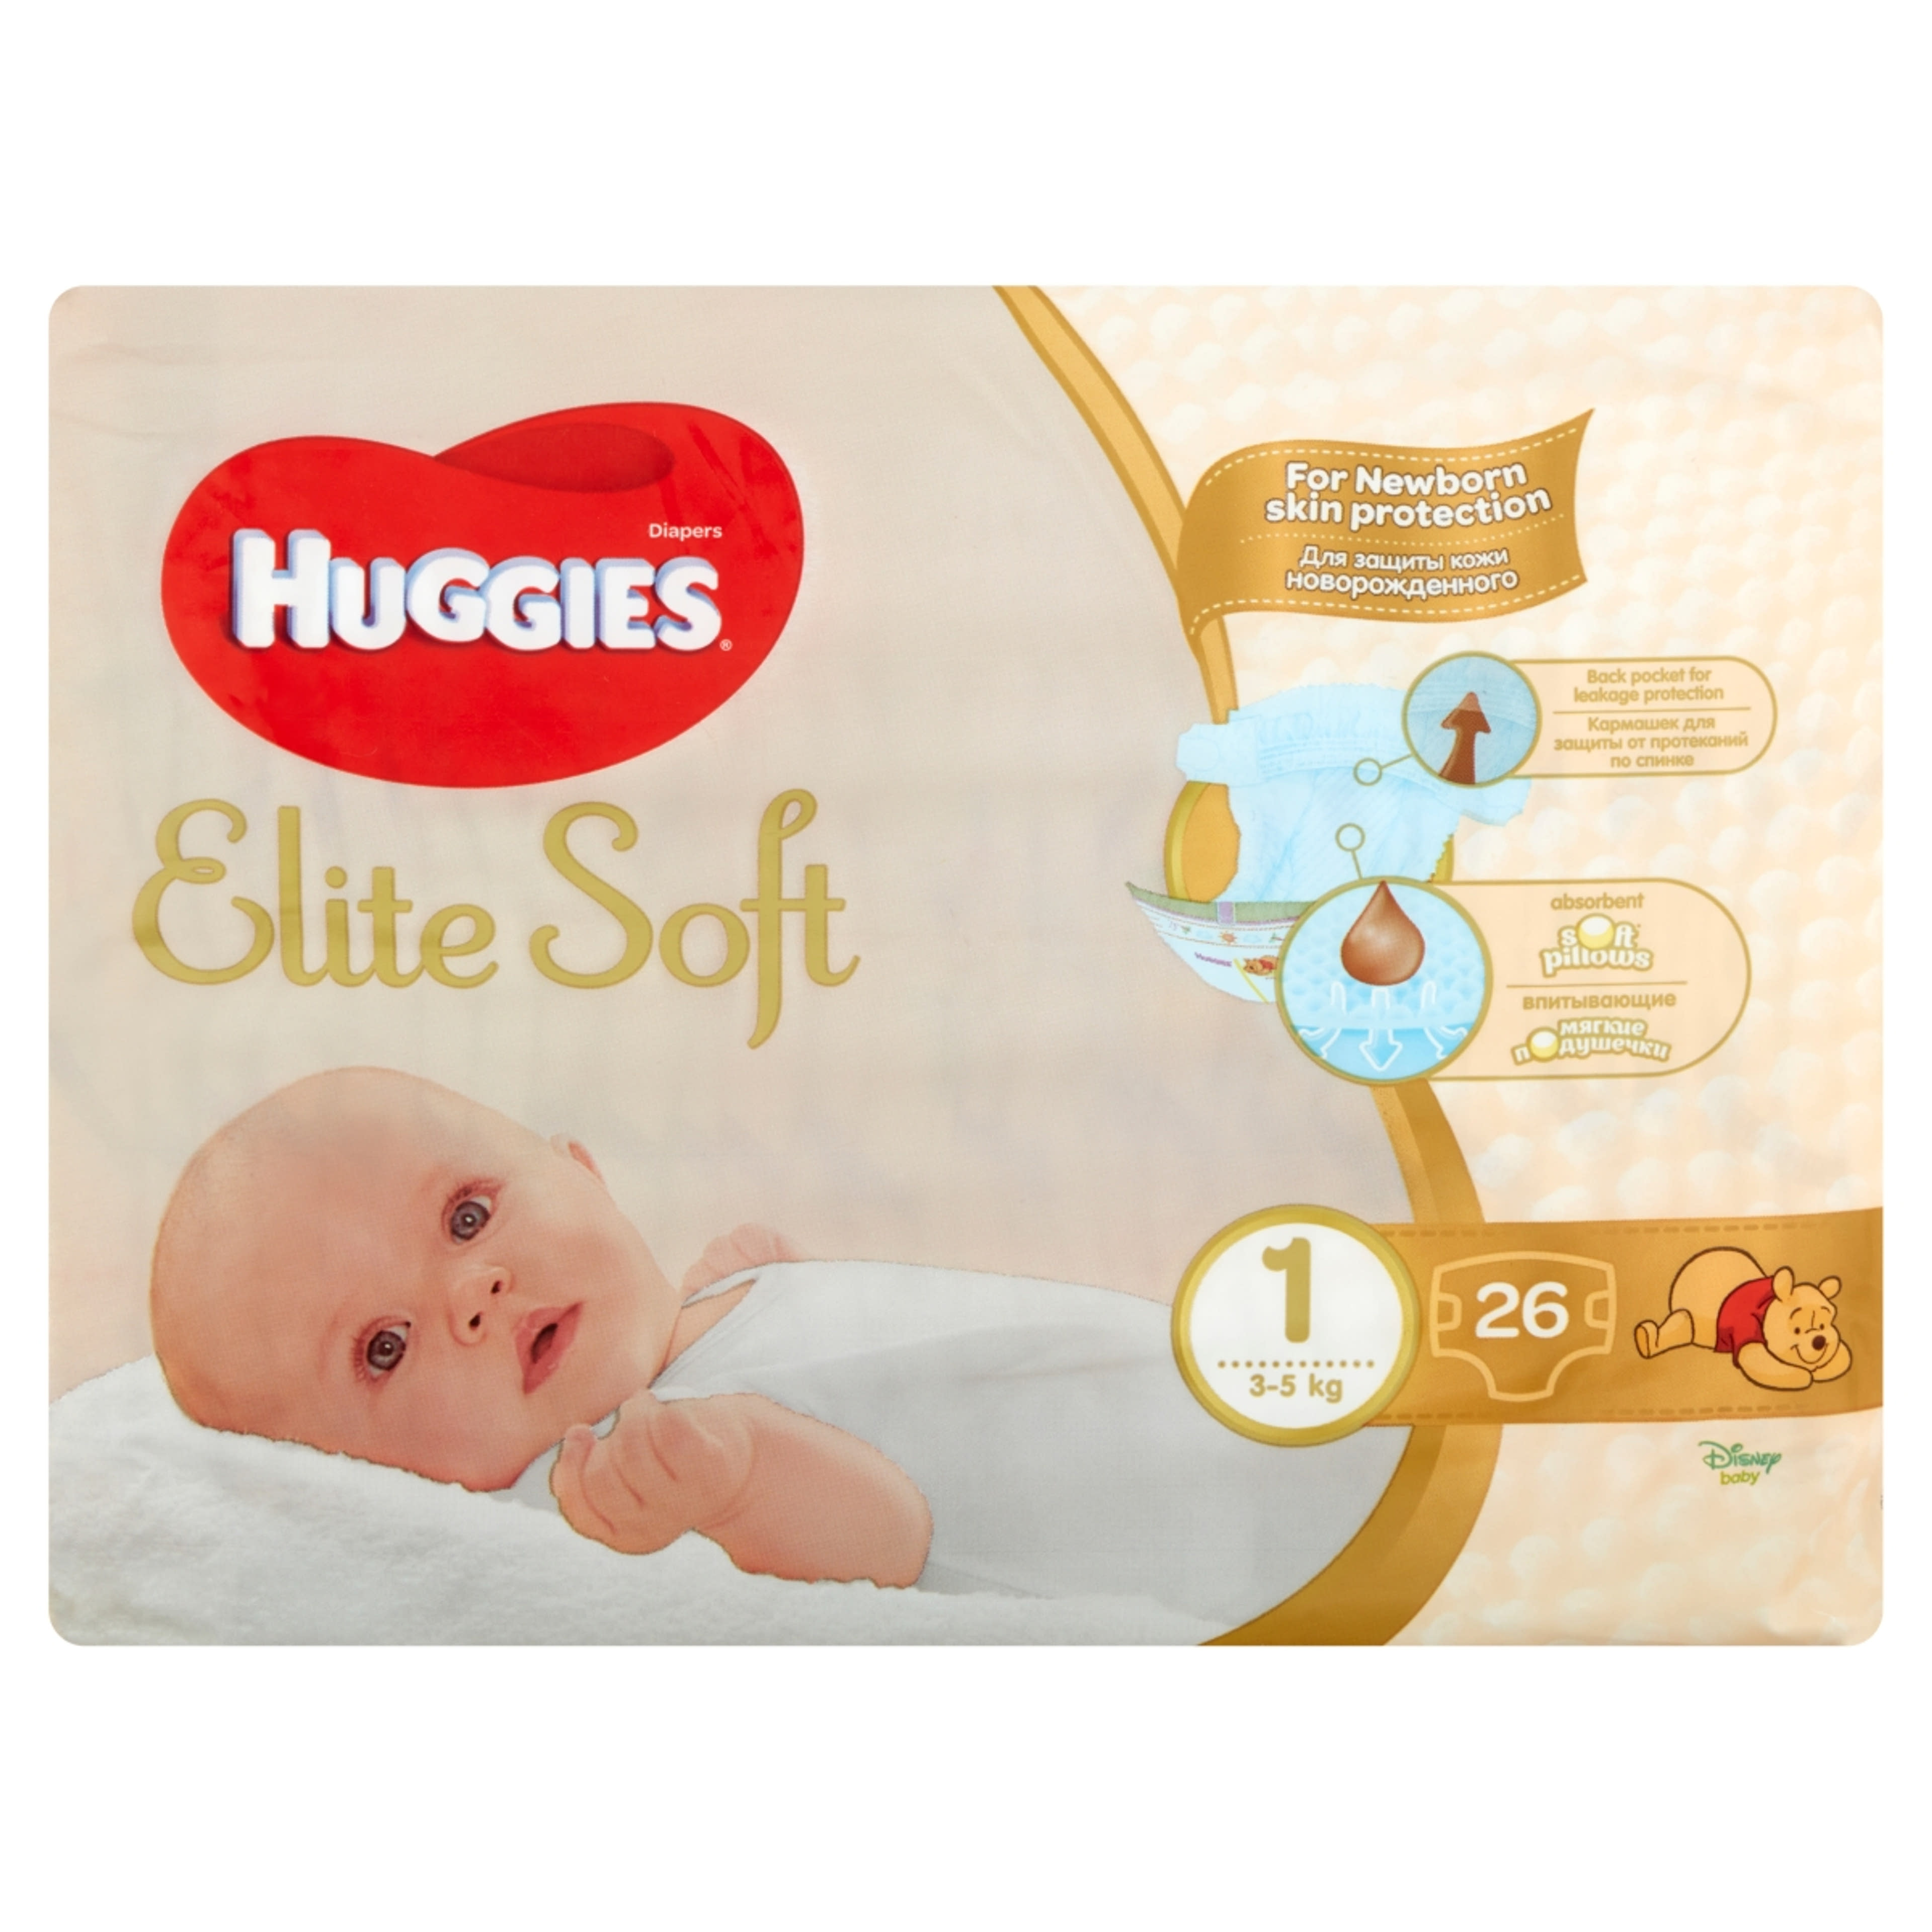 Huggies Elite Soft 1 3-5 kg pelenka újszülött csecsemők számára - 26 db-1